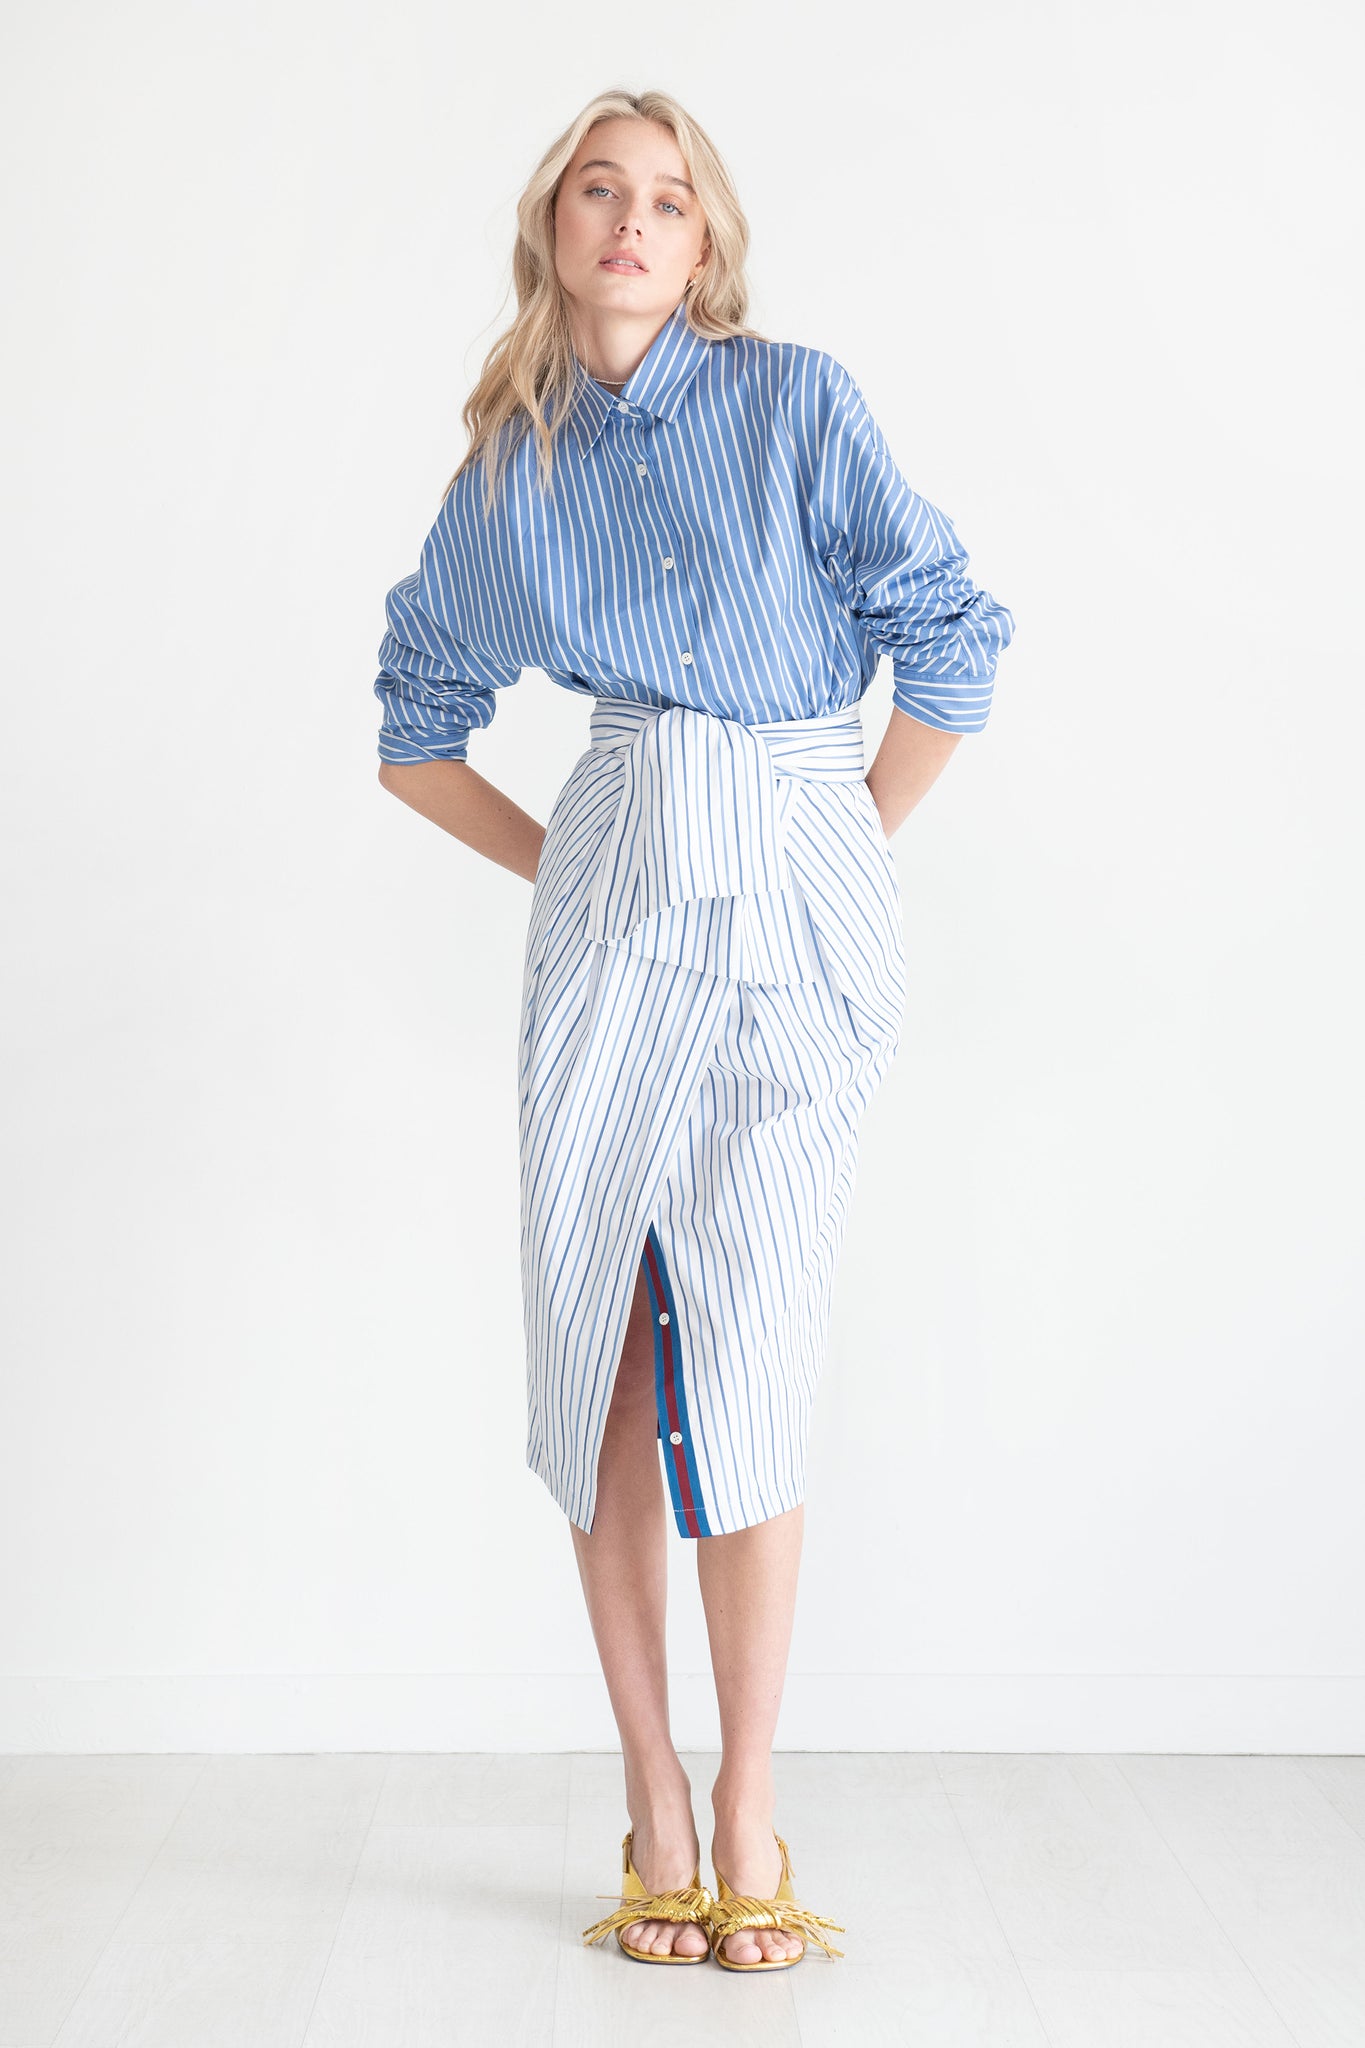 DRIES VAN NOTEN - Stripe Skirt, Light Blue